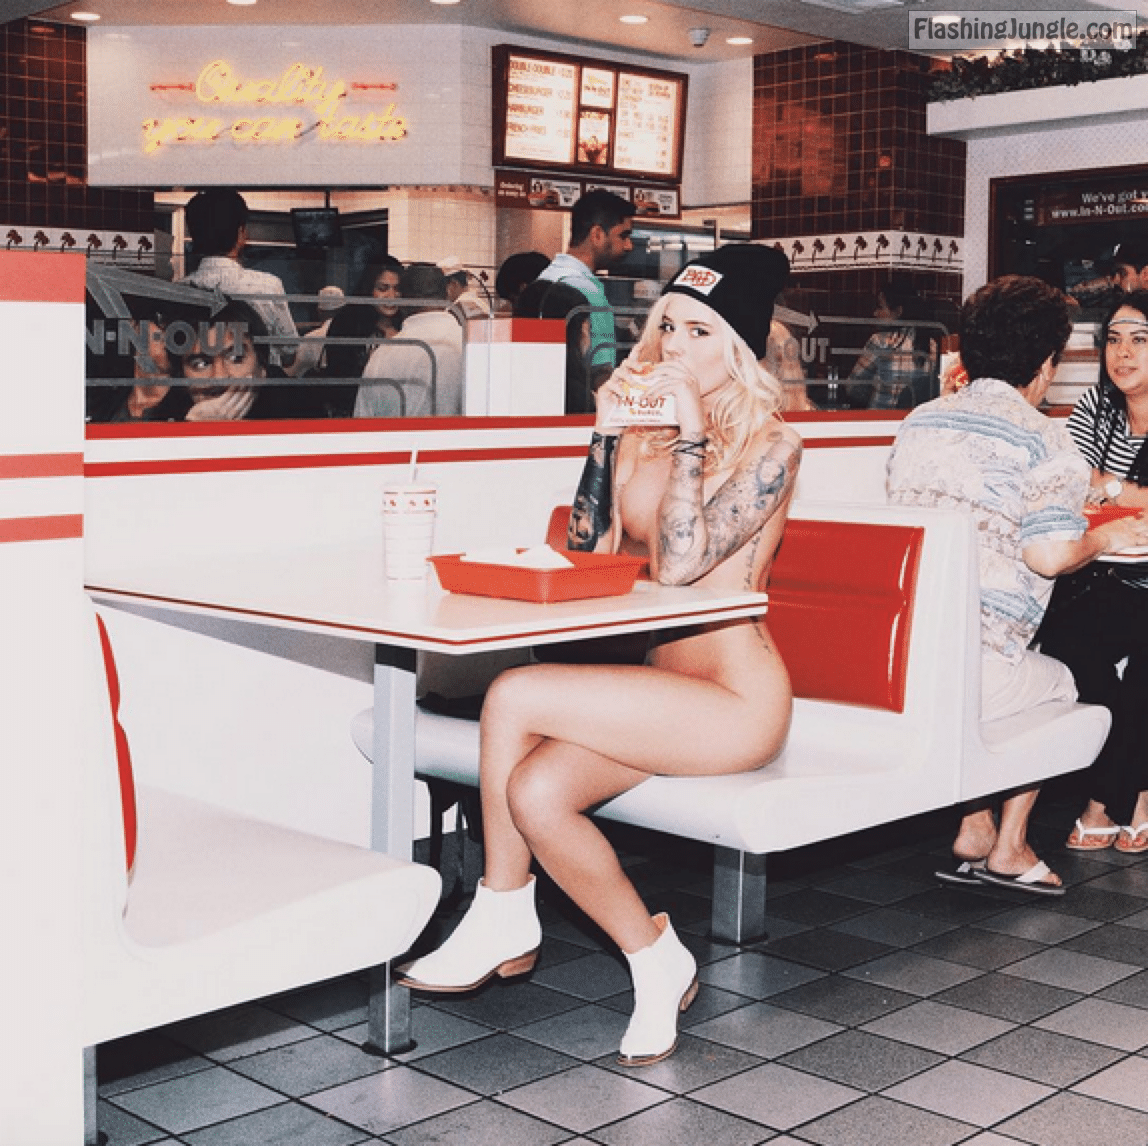 Public Nudity Pics - restaurant nudity